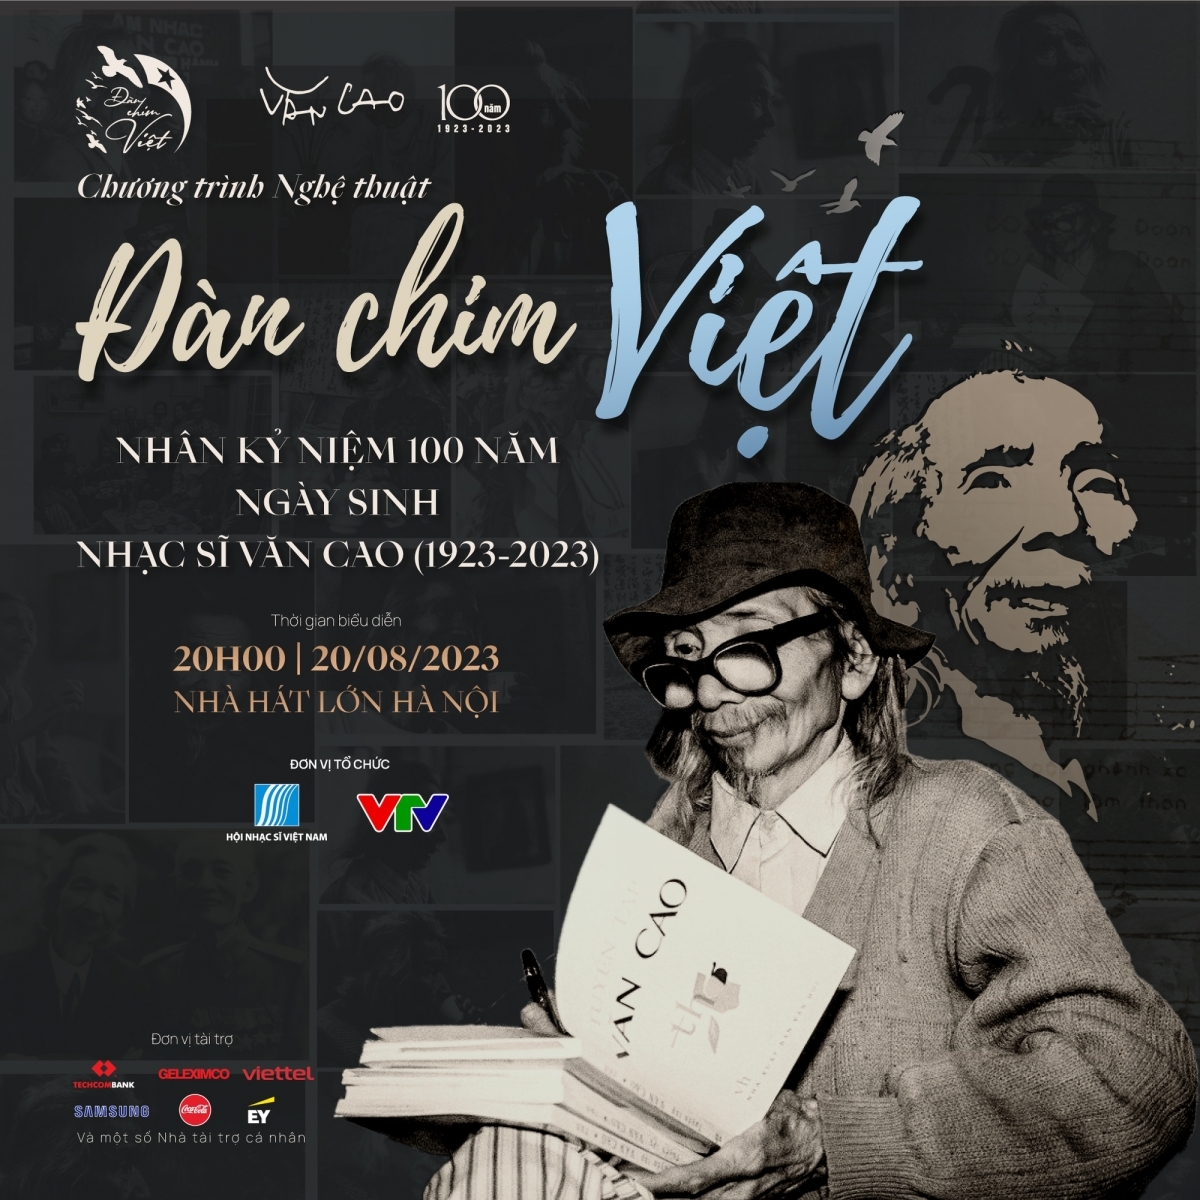 Chương trình nghệ thuật "Đàn chim Việt" tôn vinh nhạc sĩ Văn Cao